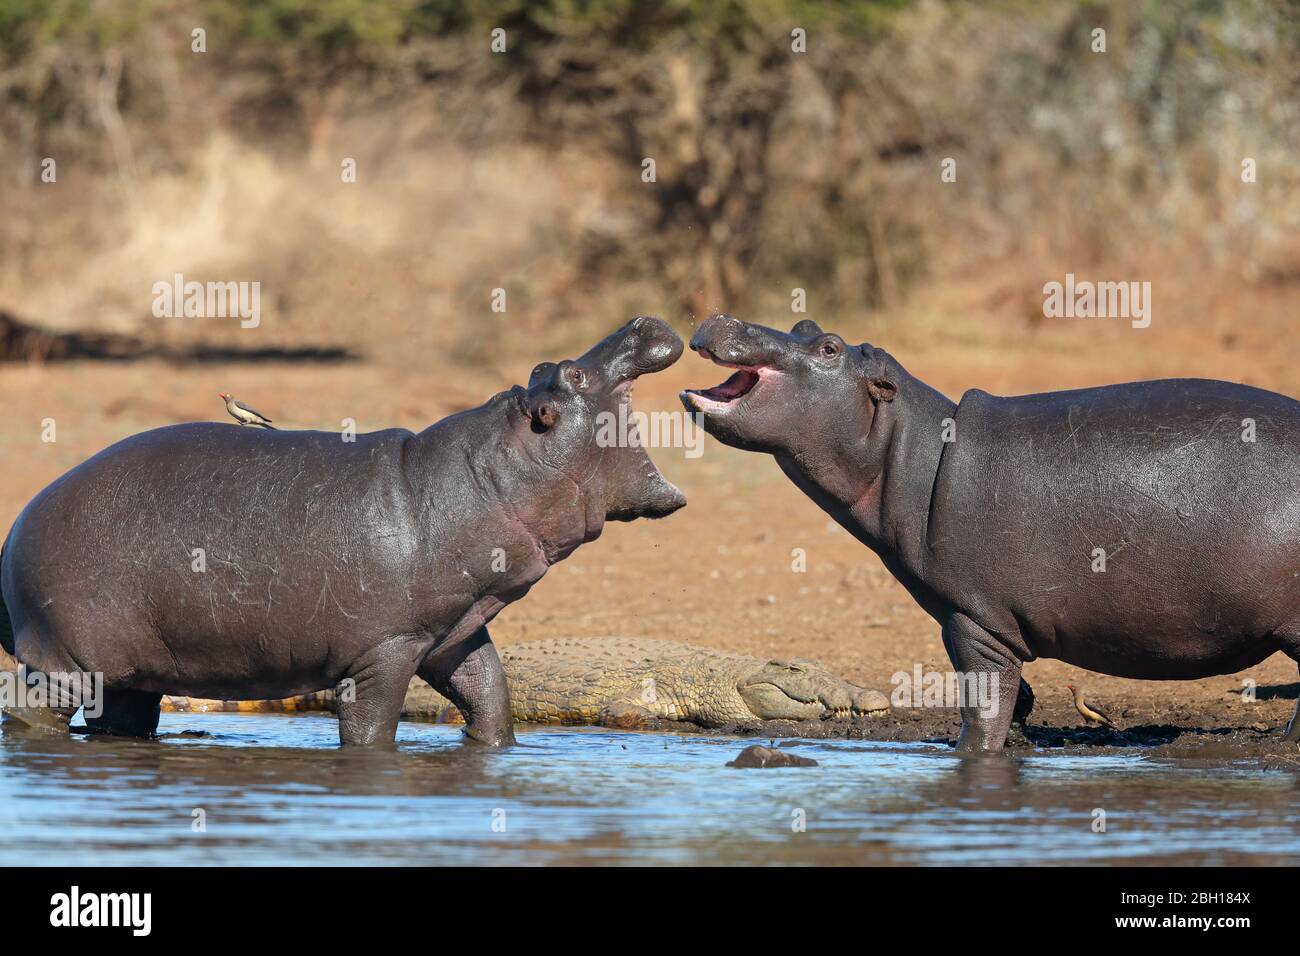 Hippopotamus, hippo, hippopotamus commun (Hippopotamus amphibius), comportement agressif de deux hipos sur le rivage, Afrique du Sud, Lowveld, Parc national Krueger Banque D'Images